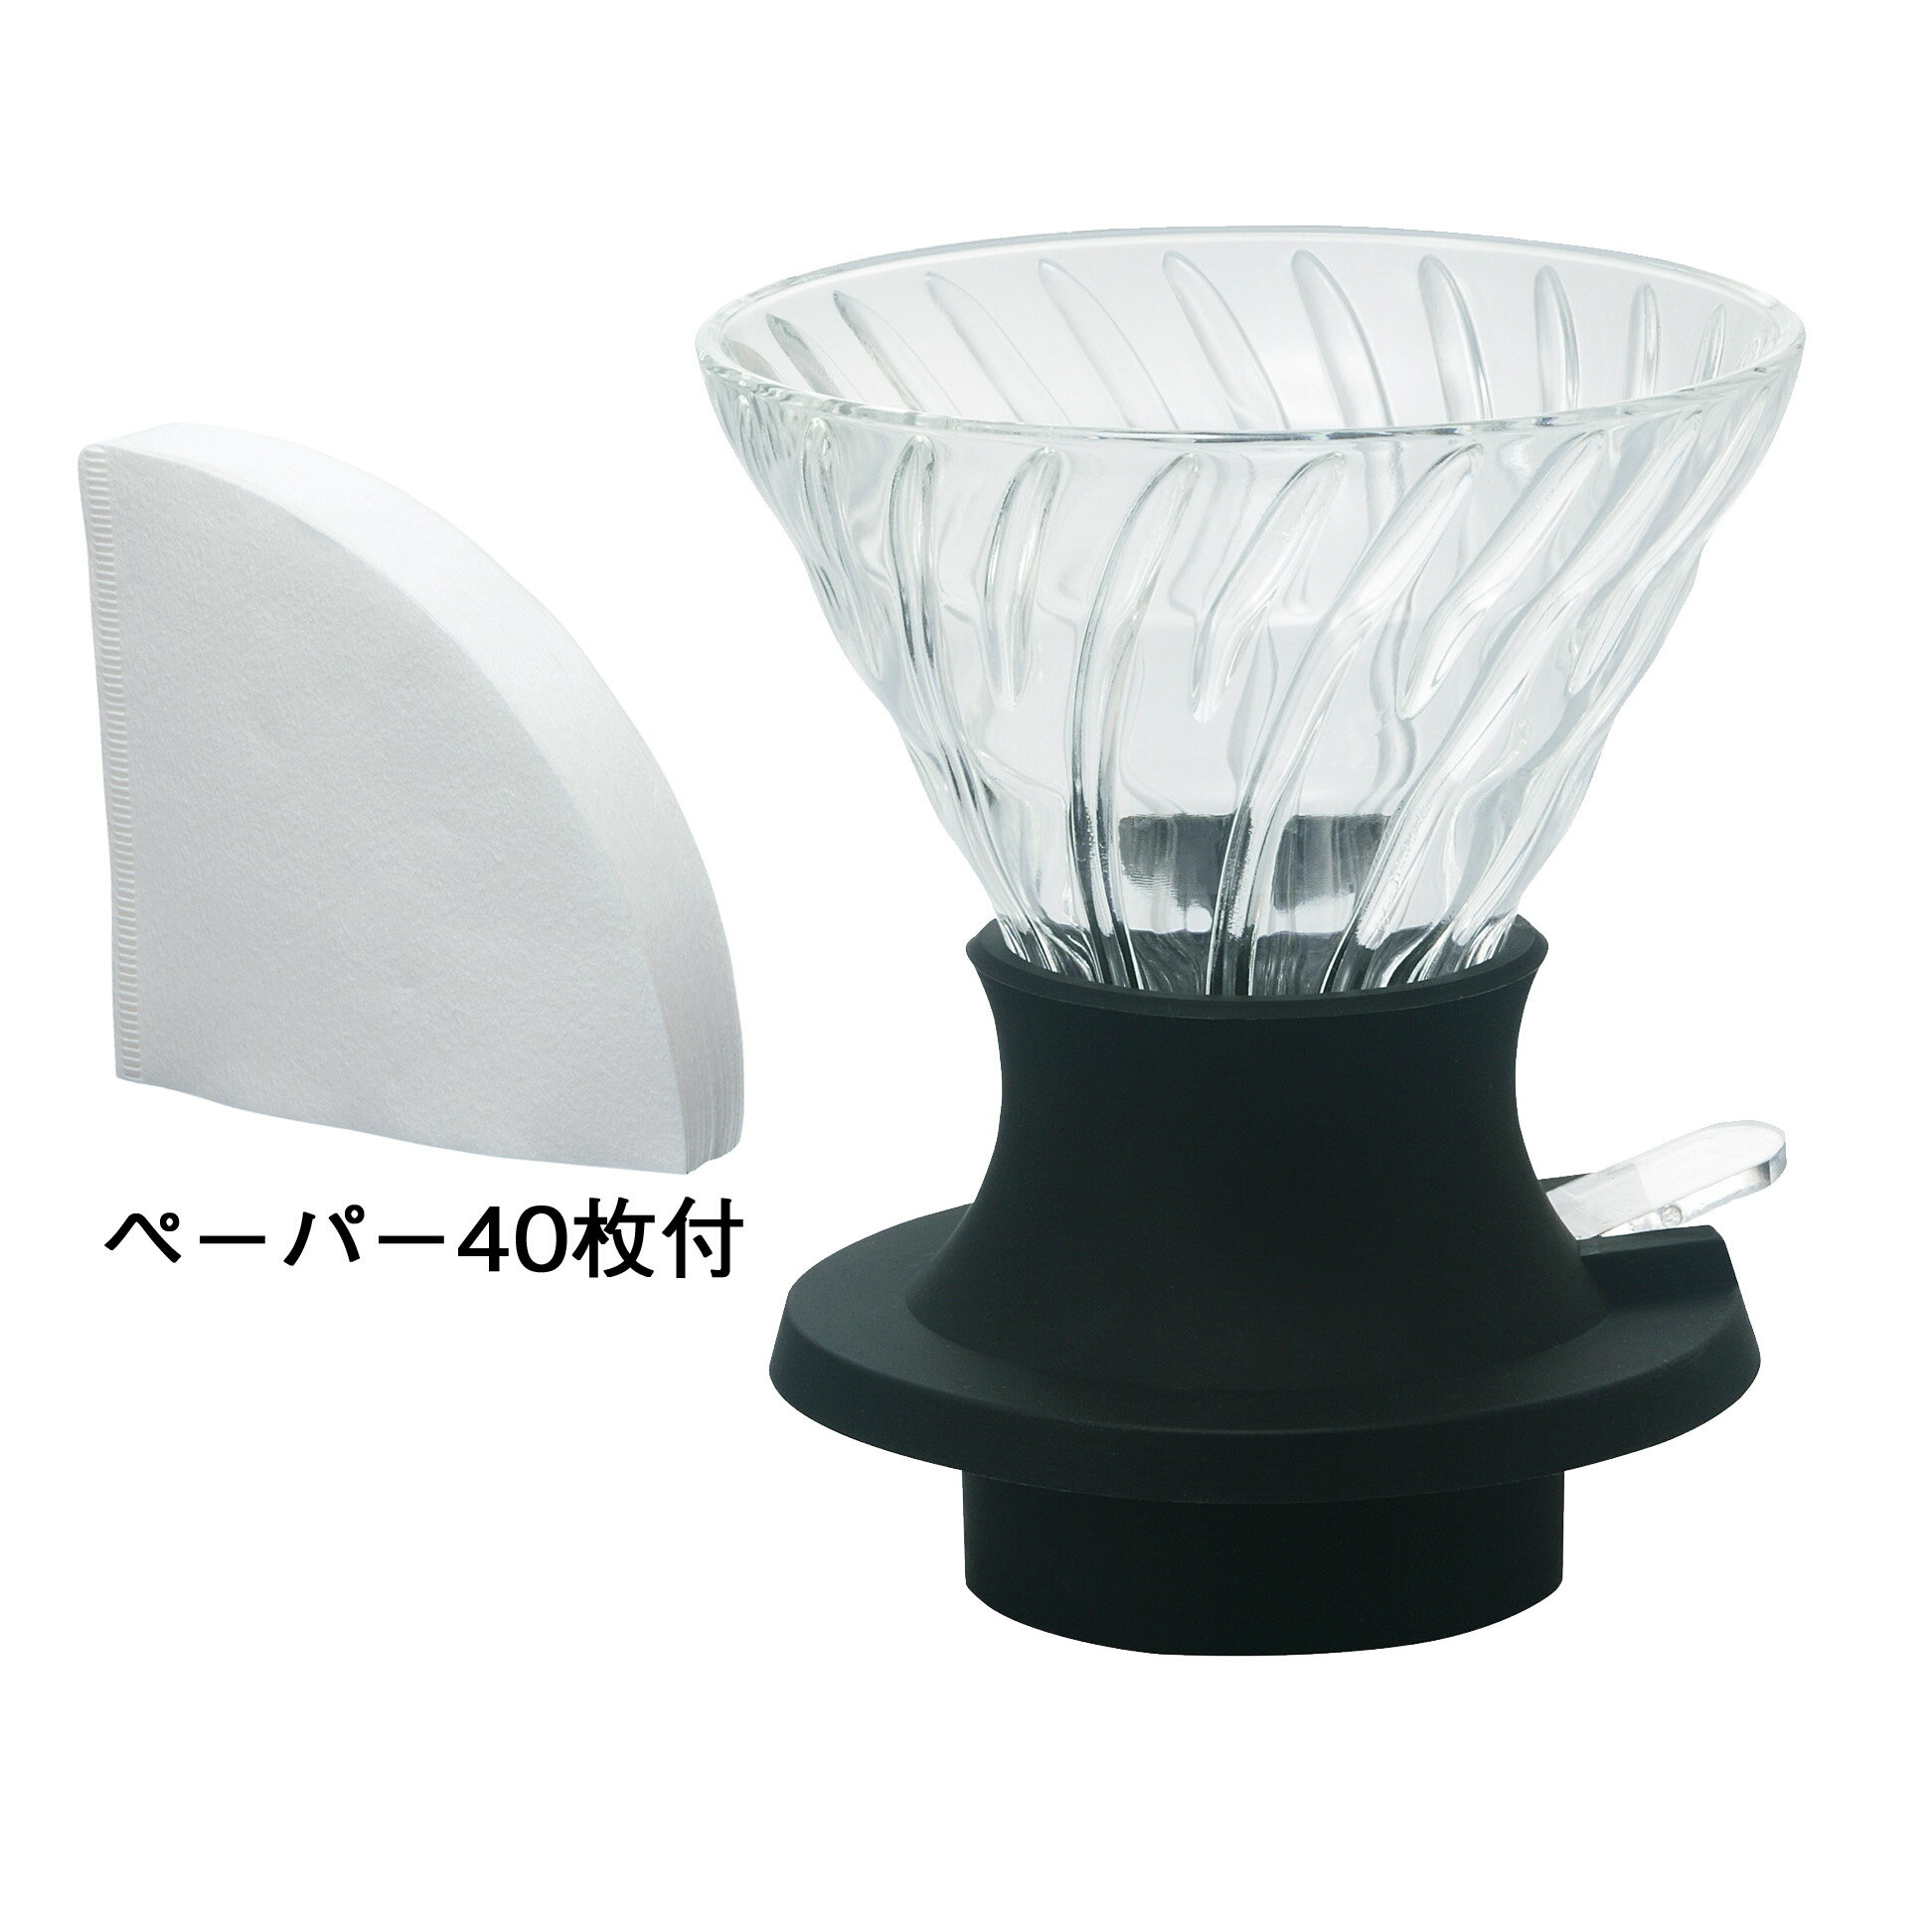 【沐湛咖啡】HARIO 浸漬式 V60濾杯 SSD-200-B/SSD-360-B 玻璃材質 日本製 1-4杯 聰明濾杯